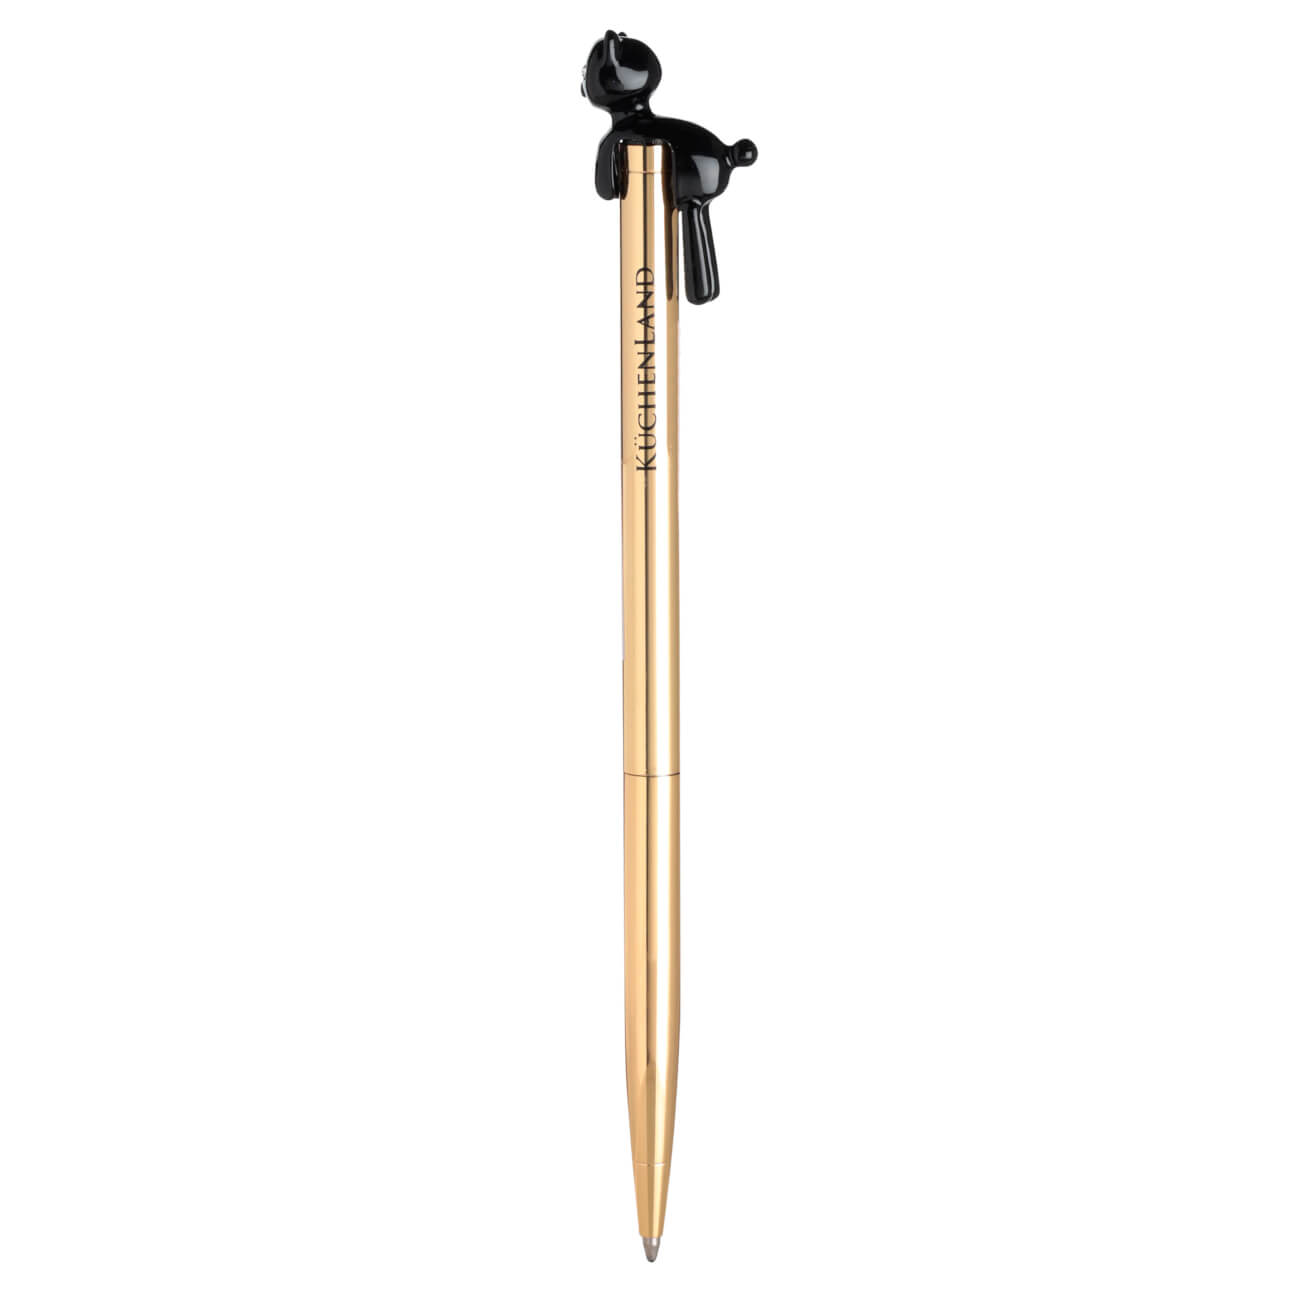 Ручка шариковая, 14 см, с фигуркой, металл, золотистая, Черный кот, Draw figure ручка шариковая 14 см с фигуркой металл белая символ женщины draw figure